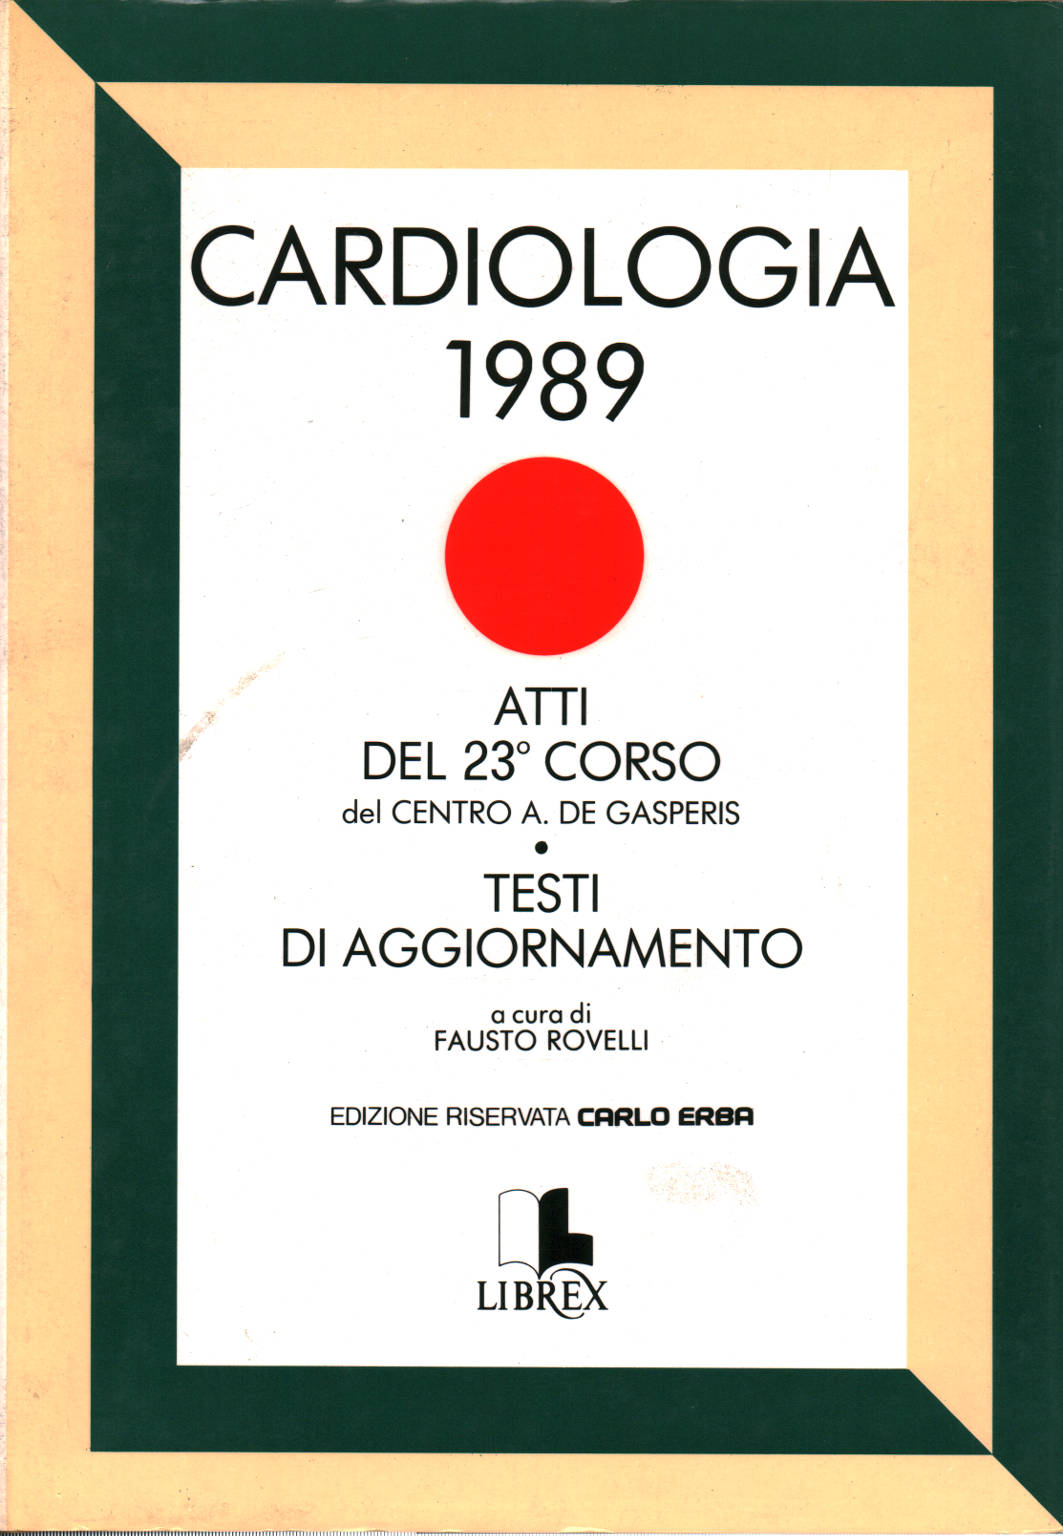 Cardiologia 1989